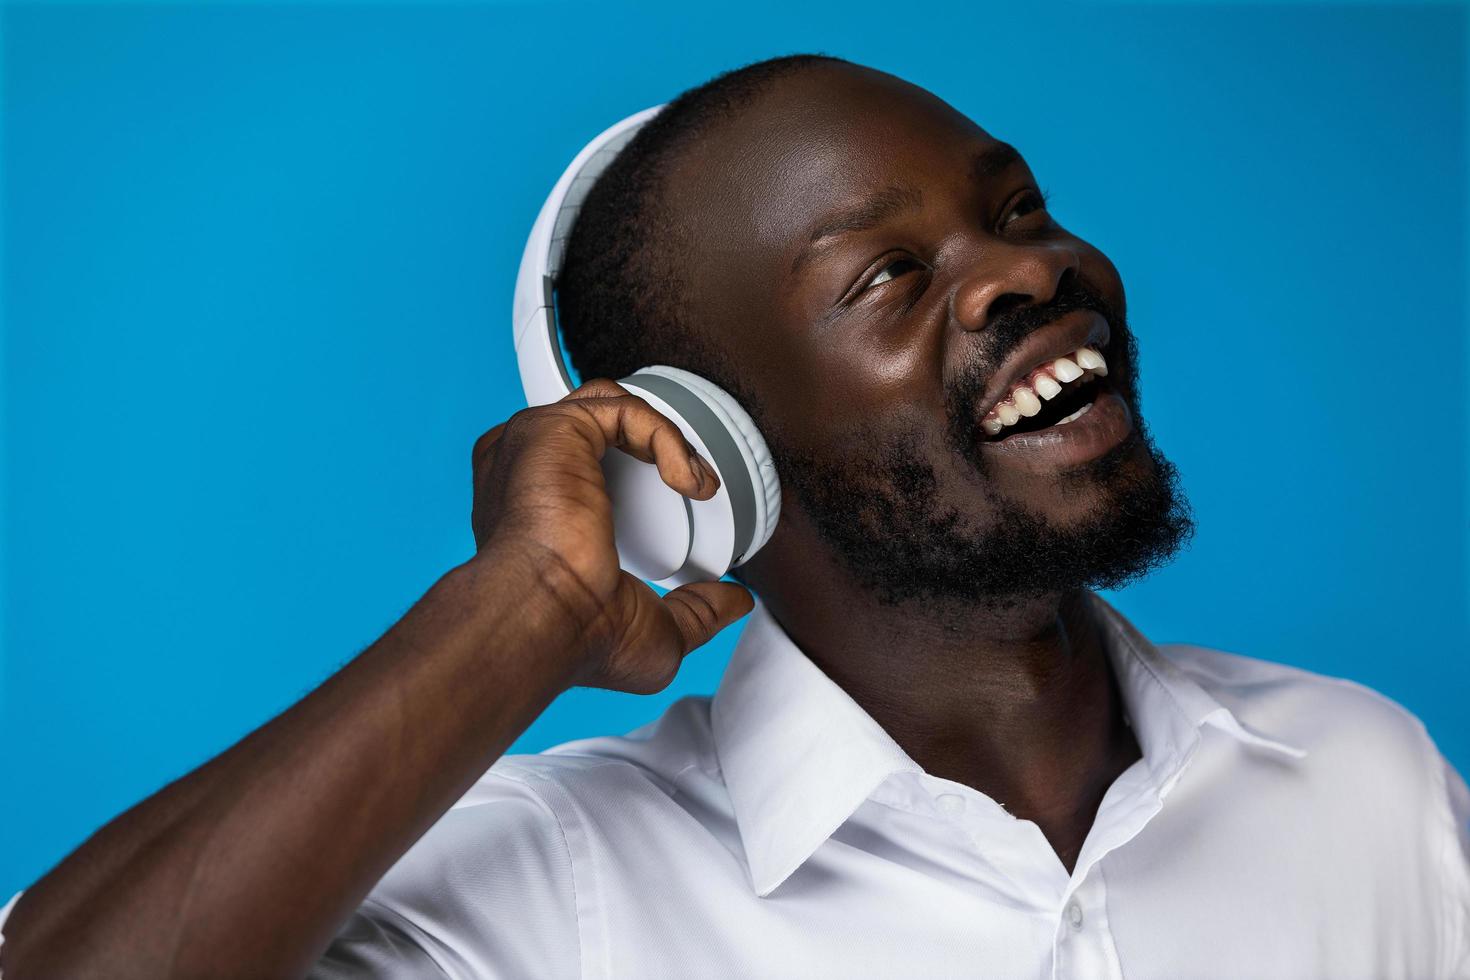 homme africain souriant aime écouter de la musique photo